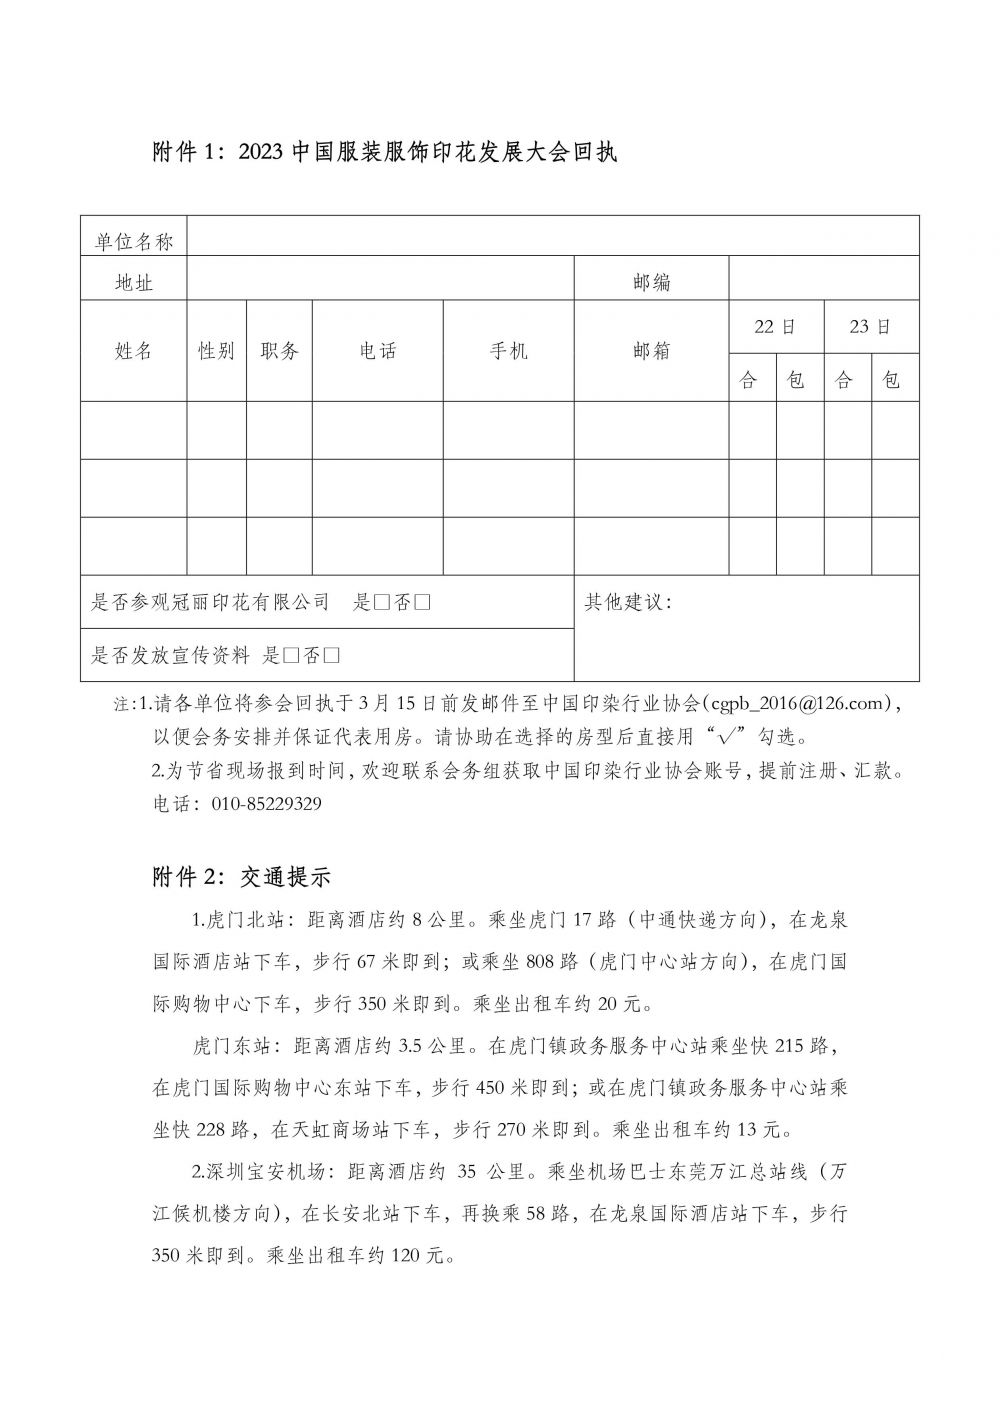 关于召开2023中国服装服饰印花发展大会的通知-6.jpg